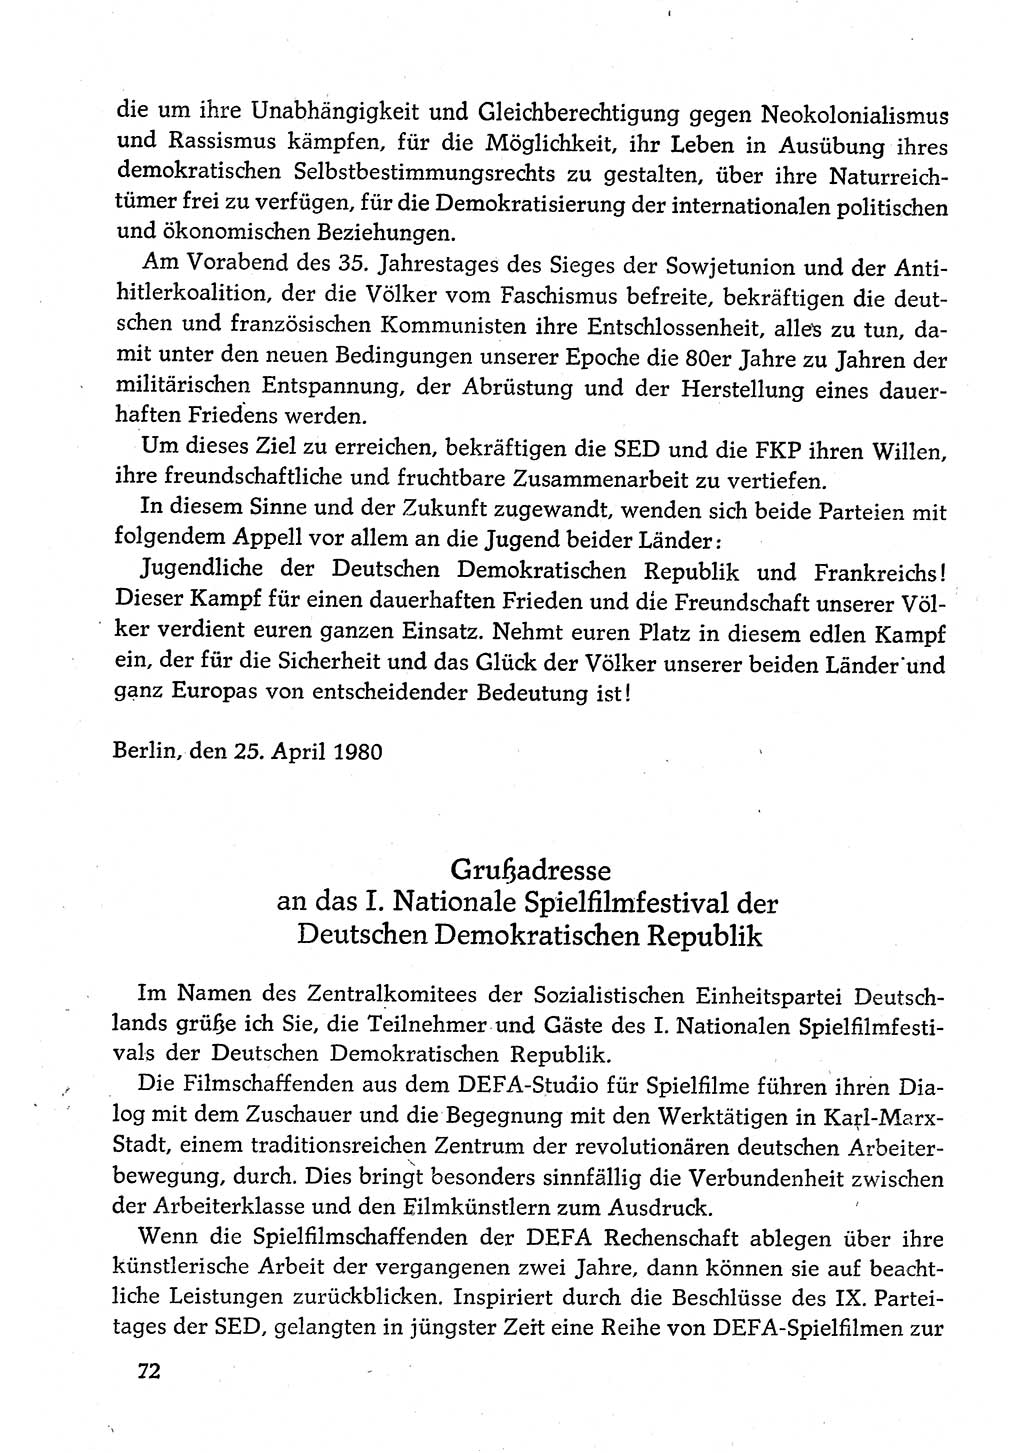 Dokumente der Sozialistischen Einheitspartei Deutschlands (SED) [Deutsche Demokratische Republik (DDR)] 1980-1981, Seite 72 (Dok. SED DDR 1980-1981, S. 72)